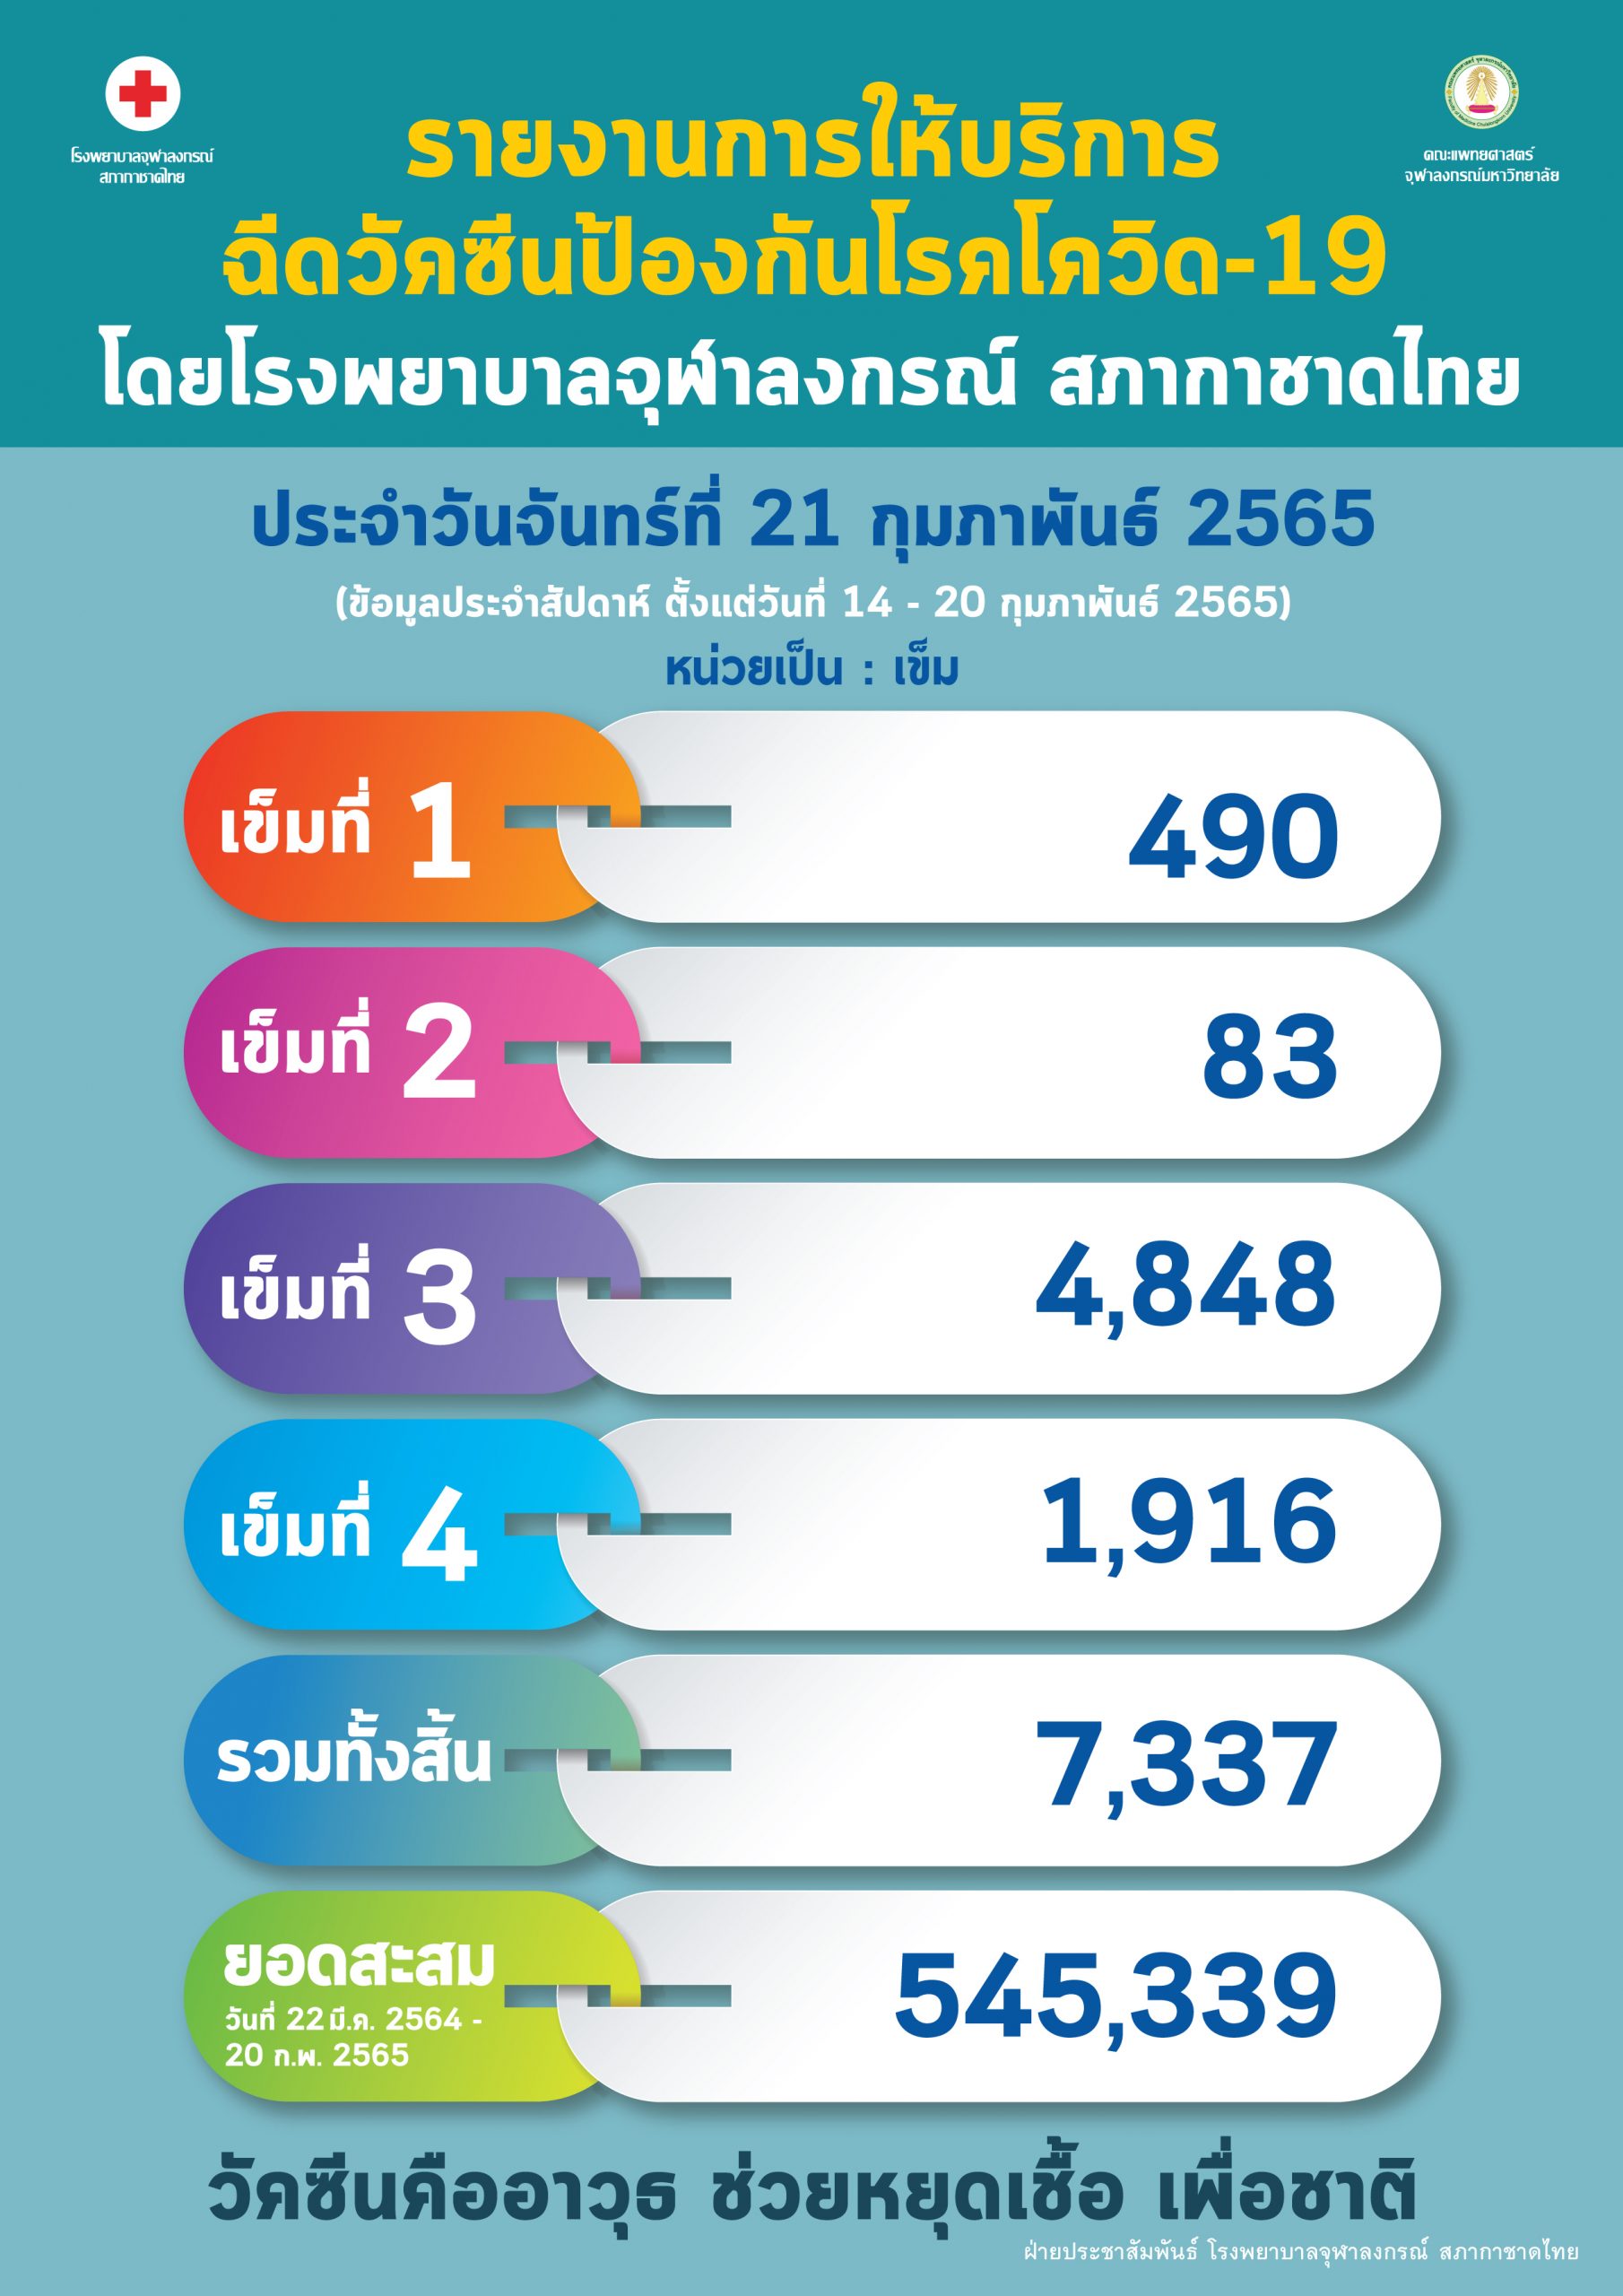 รายงานการให้บริการฉีดวัคซีนป้องกันโรคโควิด-19 โดยโรงพยาบาลจุฬาลงกรณ์ สภากาชาดไทย ประจำวันจันทร์ที่ 21 กุมภาพันธ์ 2565